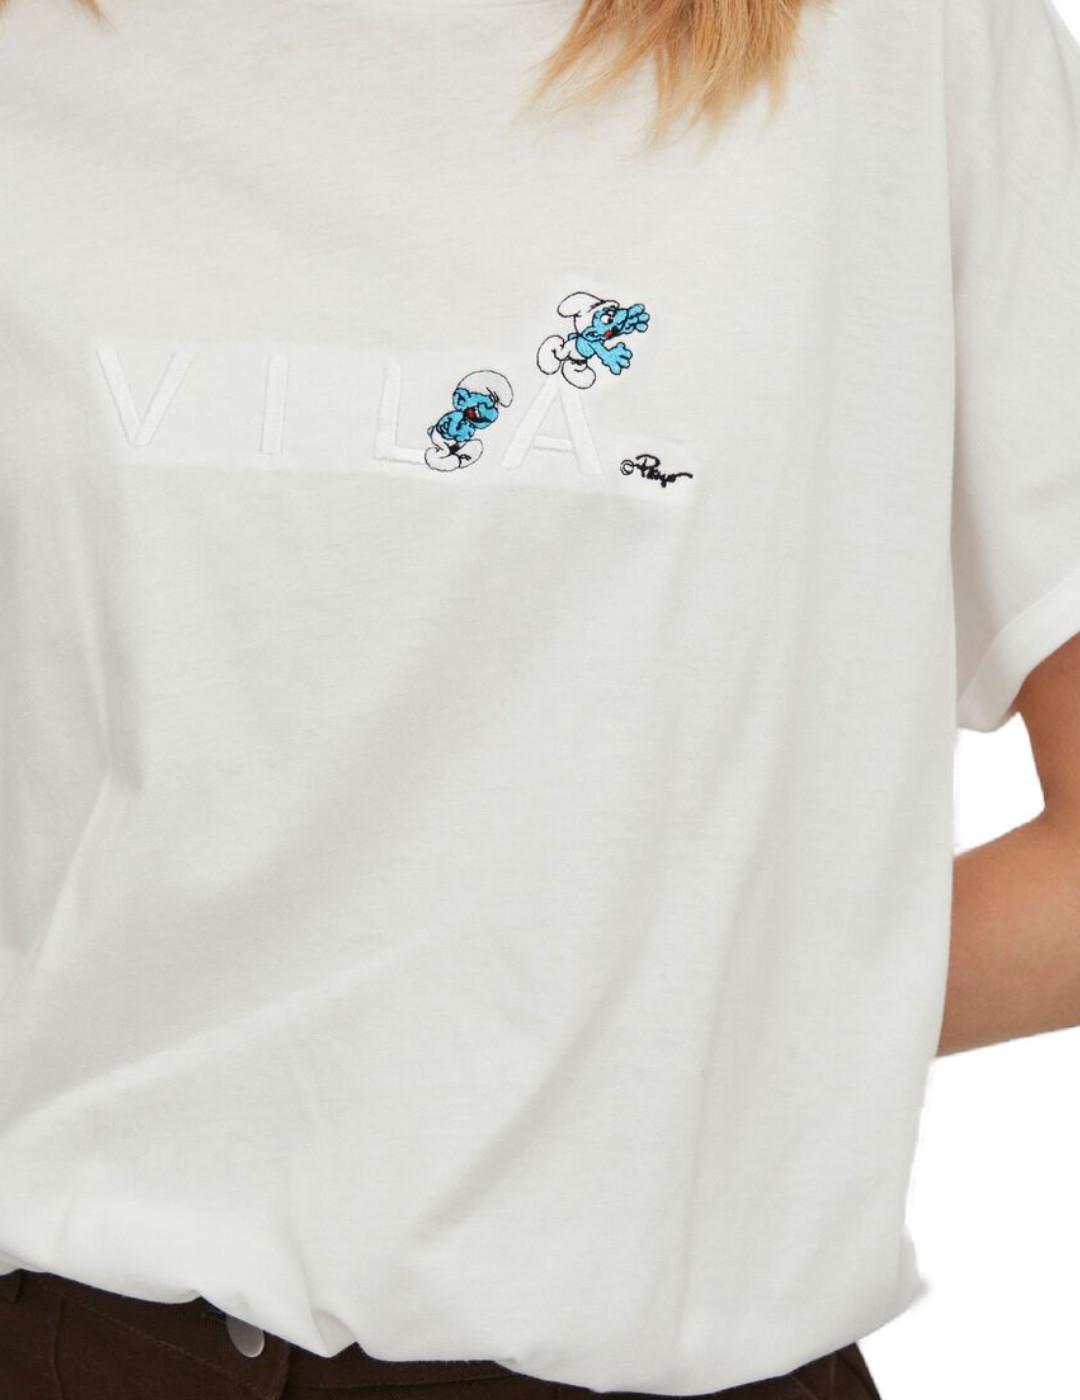 Camiseta Vila Smurfy blanca para mujer-b